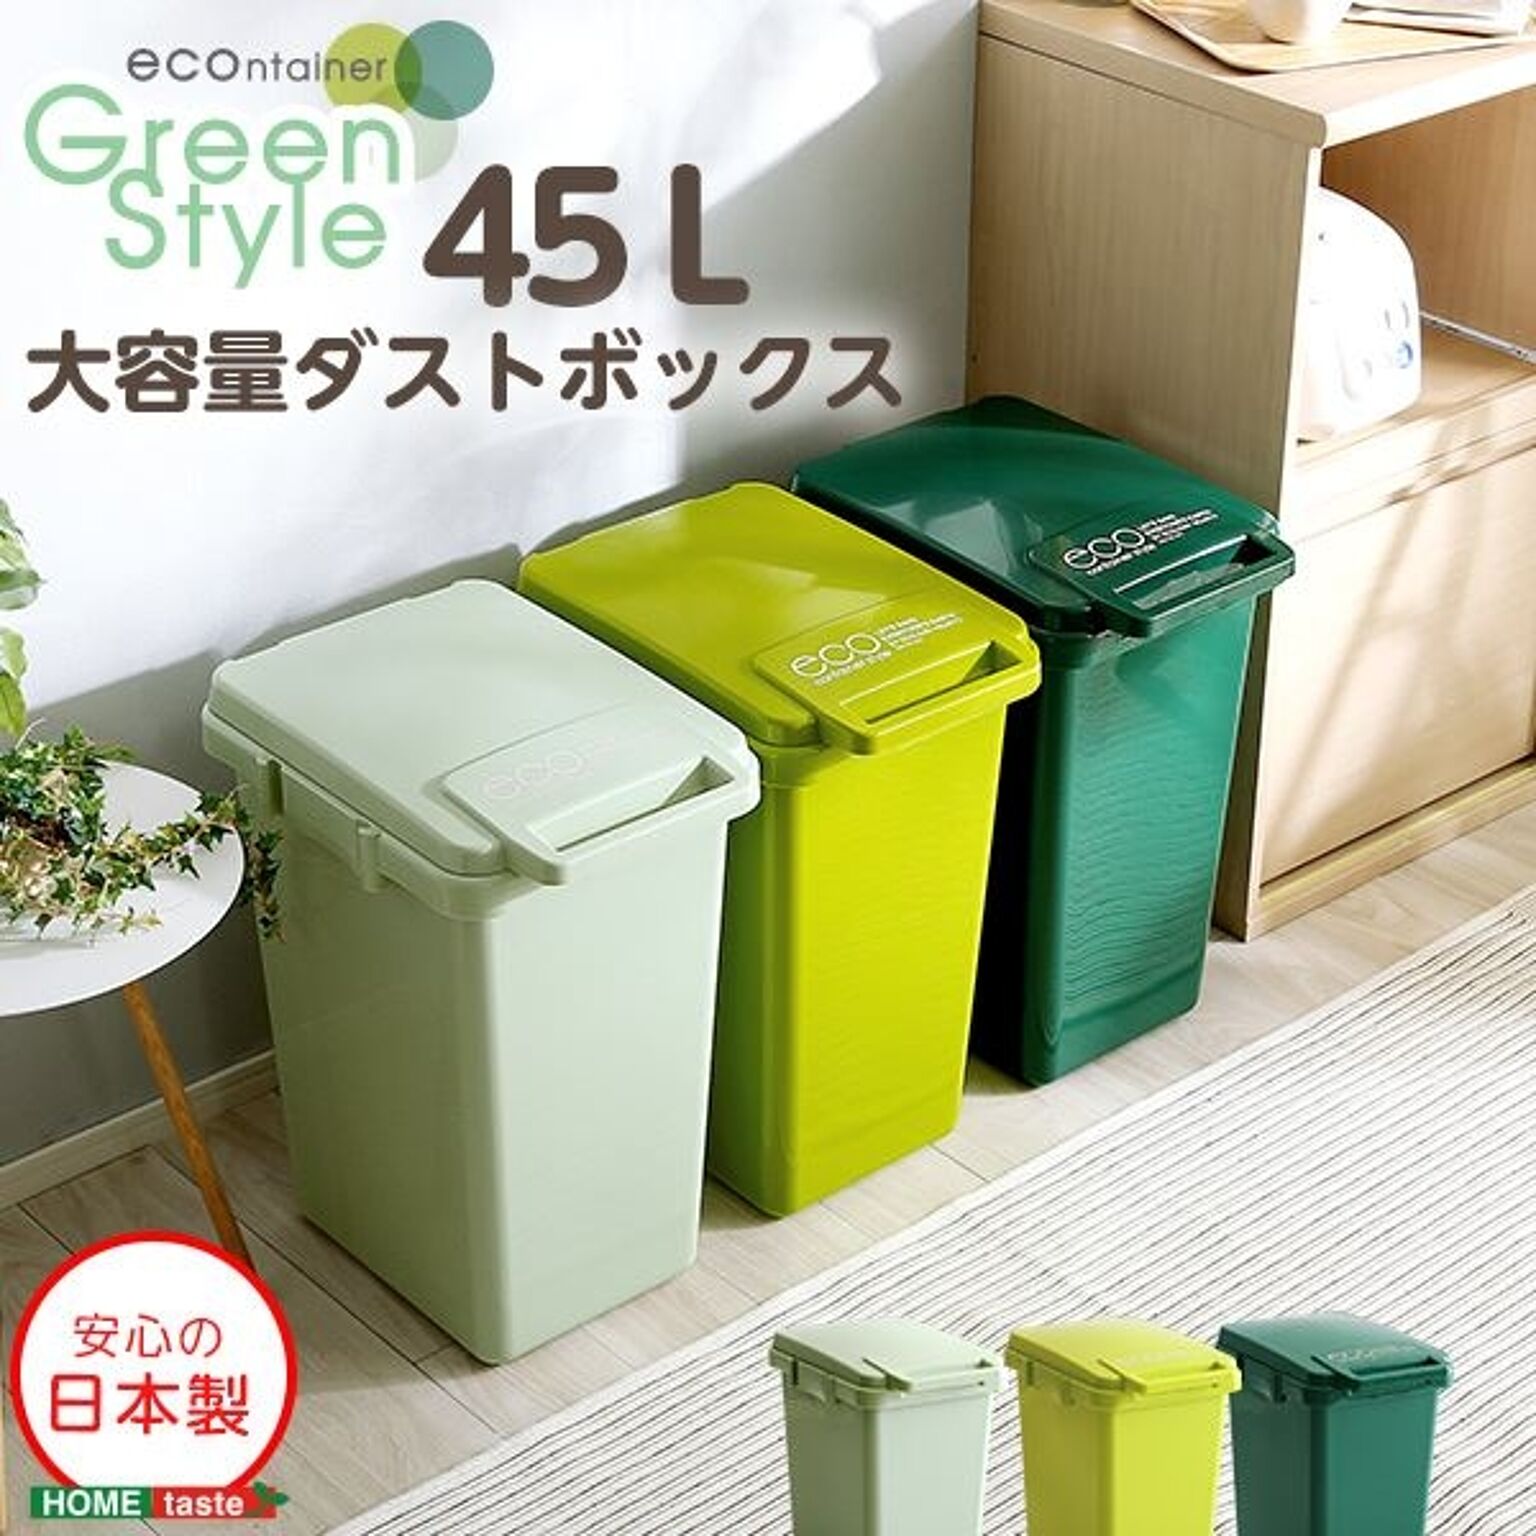 ダストボックス ゴミ箱 幅34cm 45L ライトグリーン フタ付き 大容量 ジョイント連結対応 ワンハンド開閉 大口タイプ 分別可 日本製 キッチン ペールボックス ごみ箱